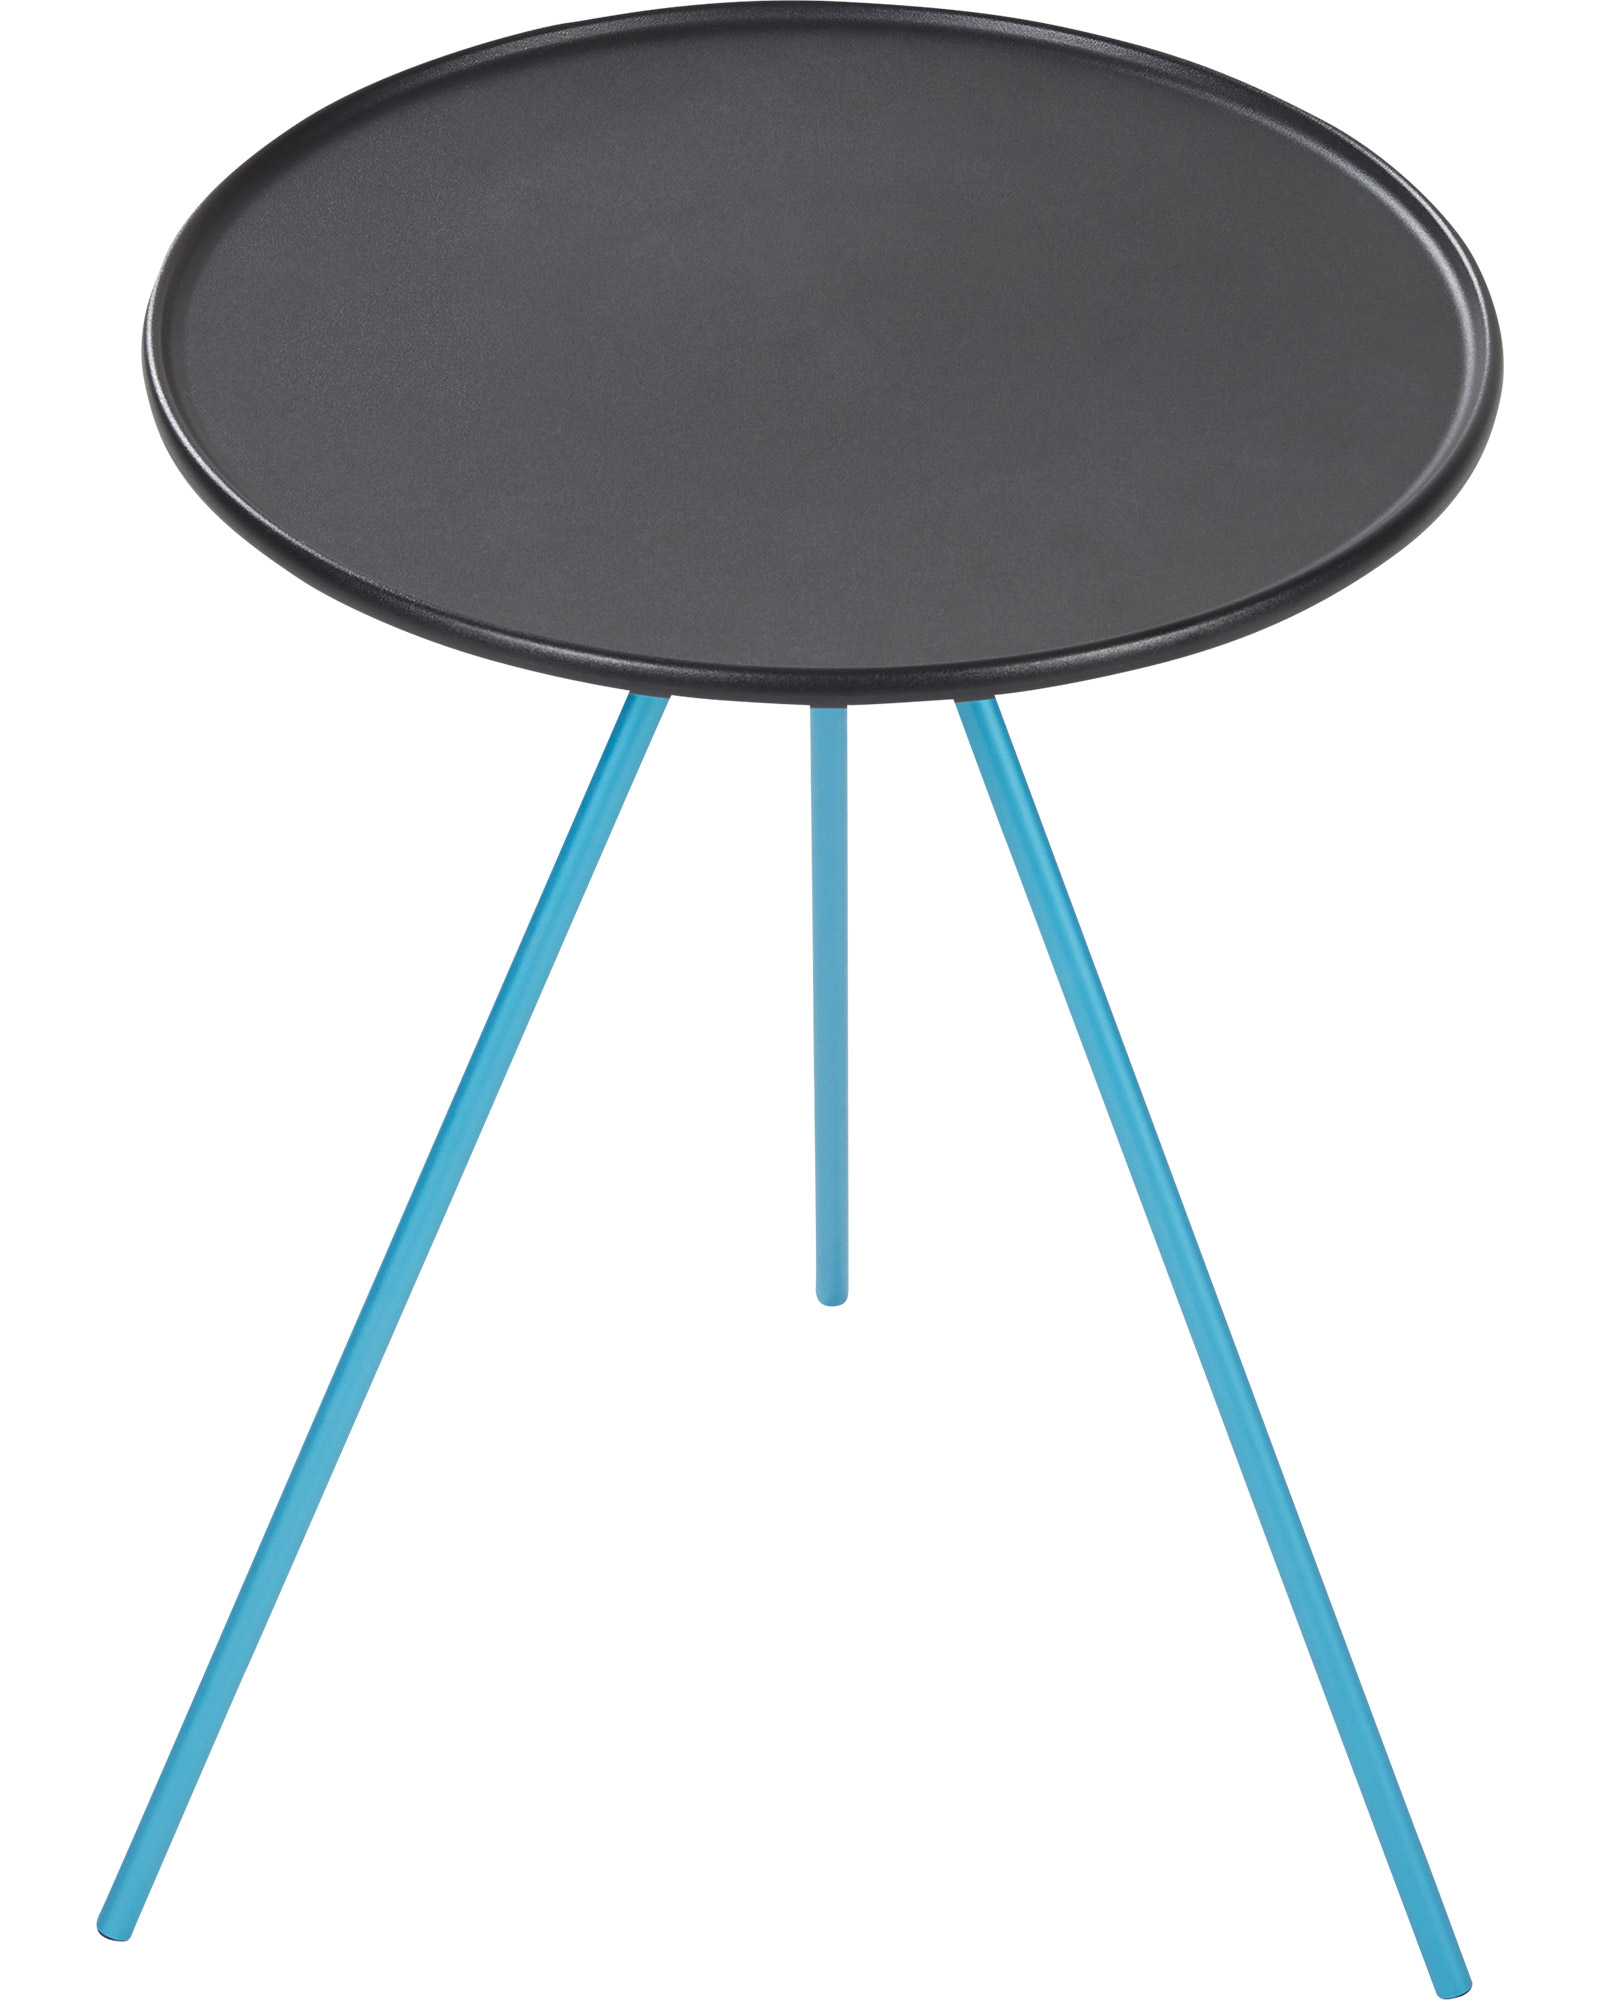 Helinox Side Table   Medium - Black/Blue